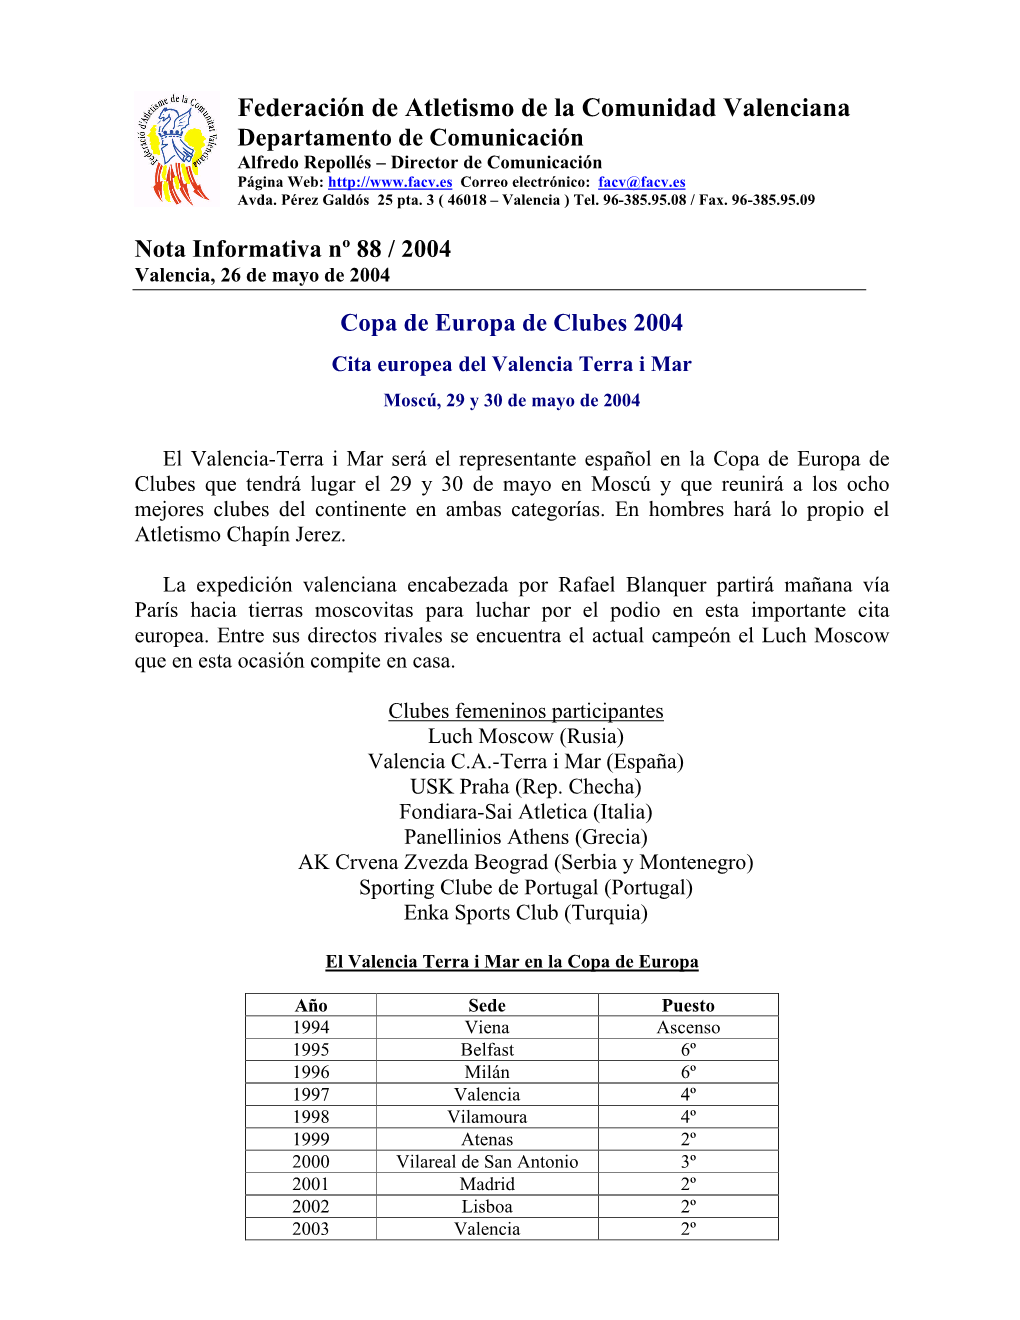 Copa De Europa De Clubes 2004 Cita Europea Del Valencia Terra I Mar Moscú, 29 Y 30 De Mayo De 2004